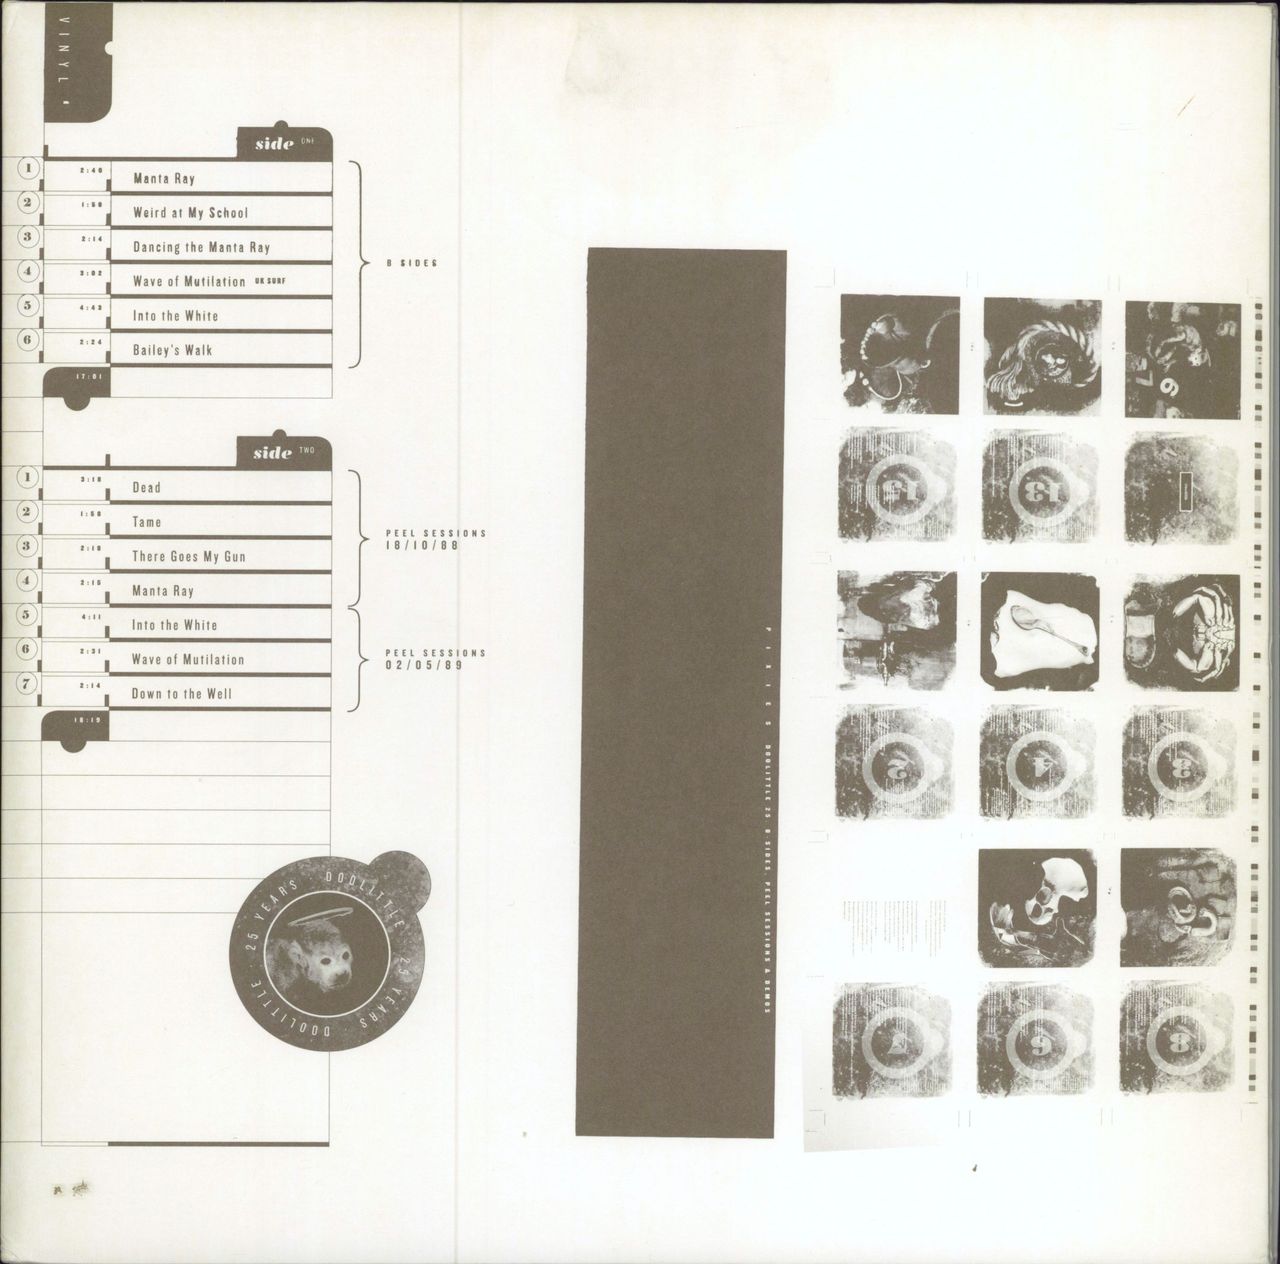 Pixies Doolittle 25 - 180gm Vinyl UK 3-LP vinyl record set (Triple LP Album) CAD3425